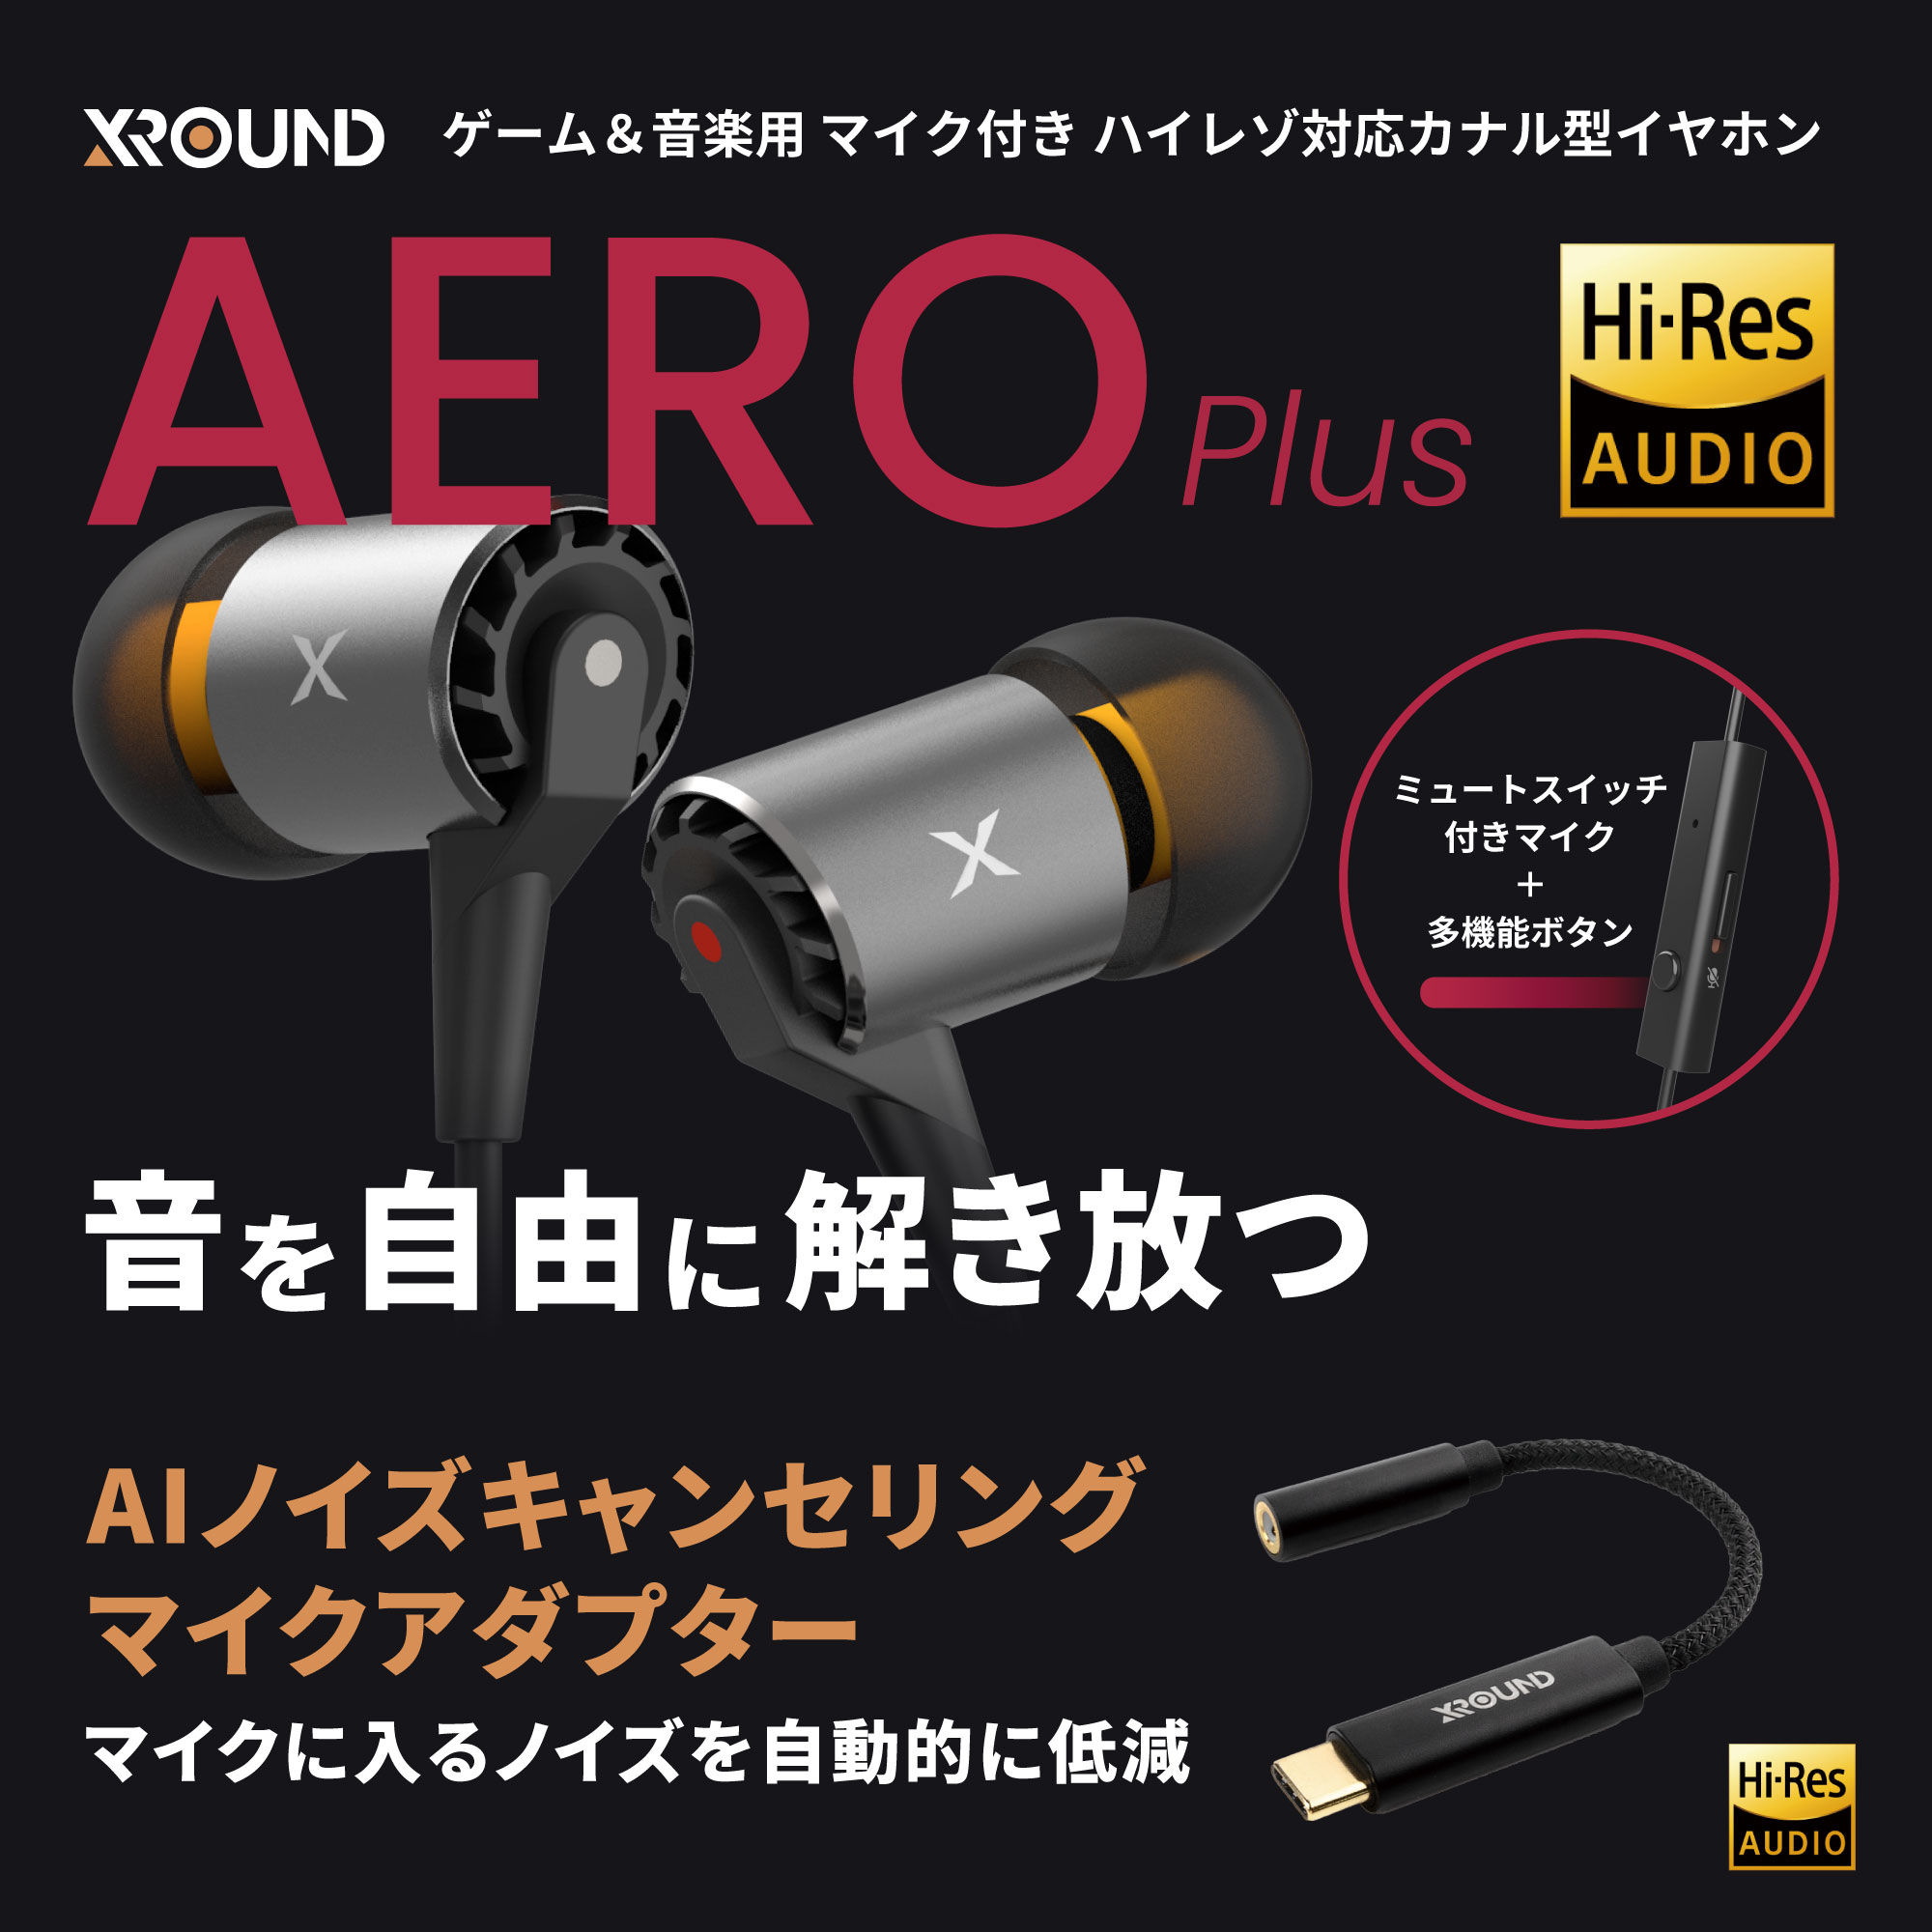 XROUNDより、「AERO」の後継『AERO Plus』が登場 - 株式会社アーキサイト